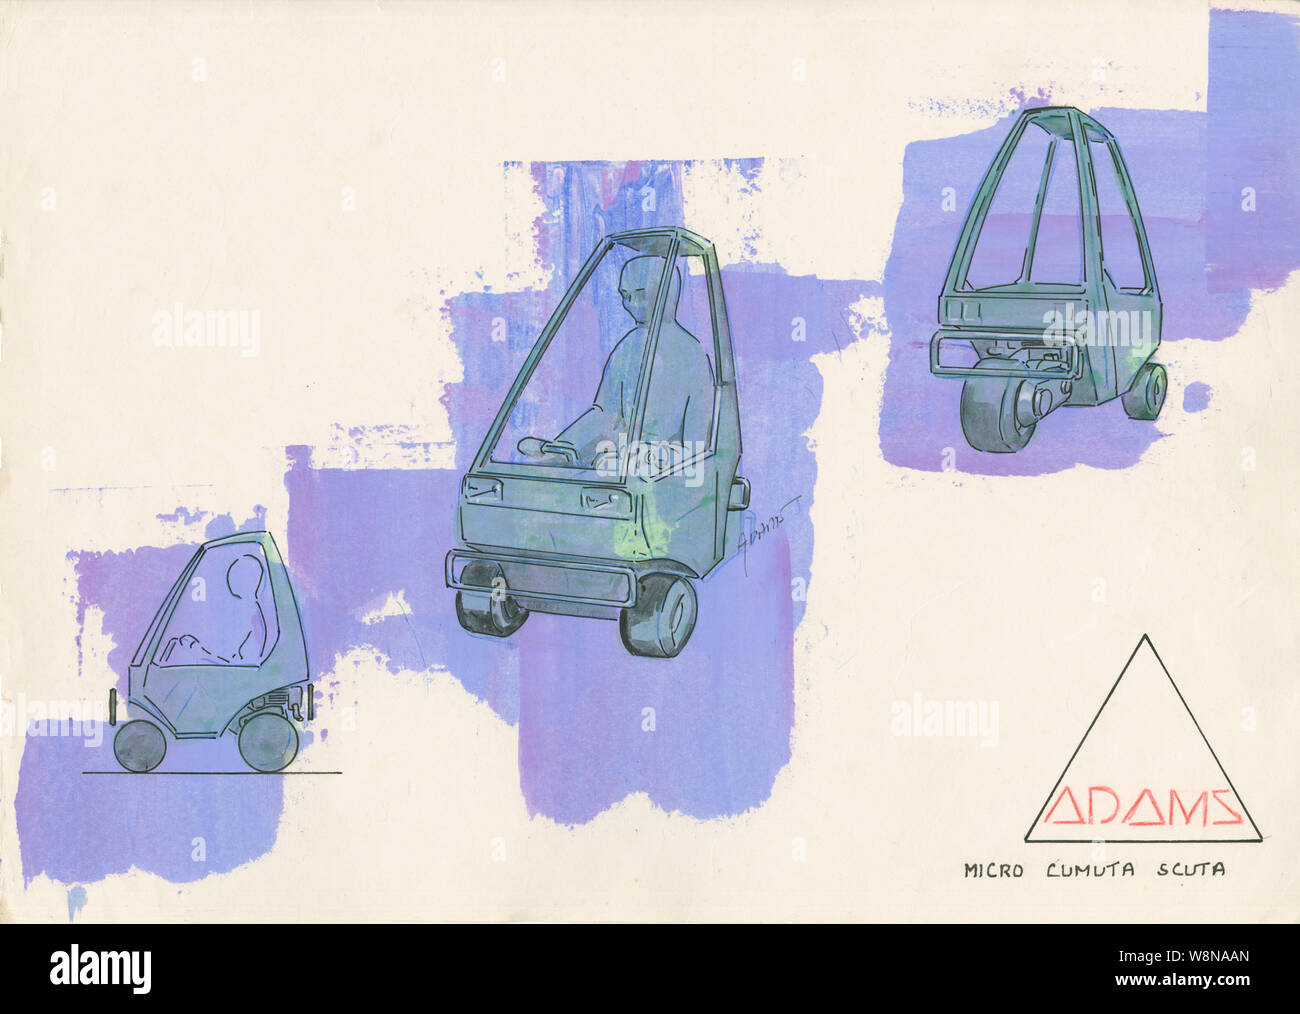 Dennis Adams Micro Scuta Cumuta Fantasy Car Design Foto Stock